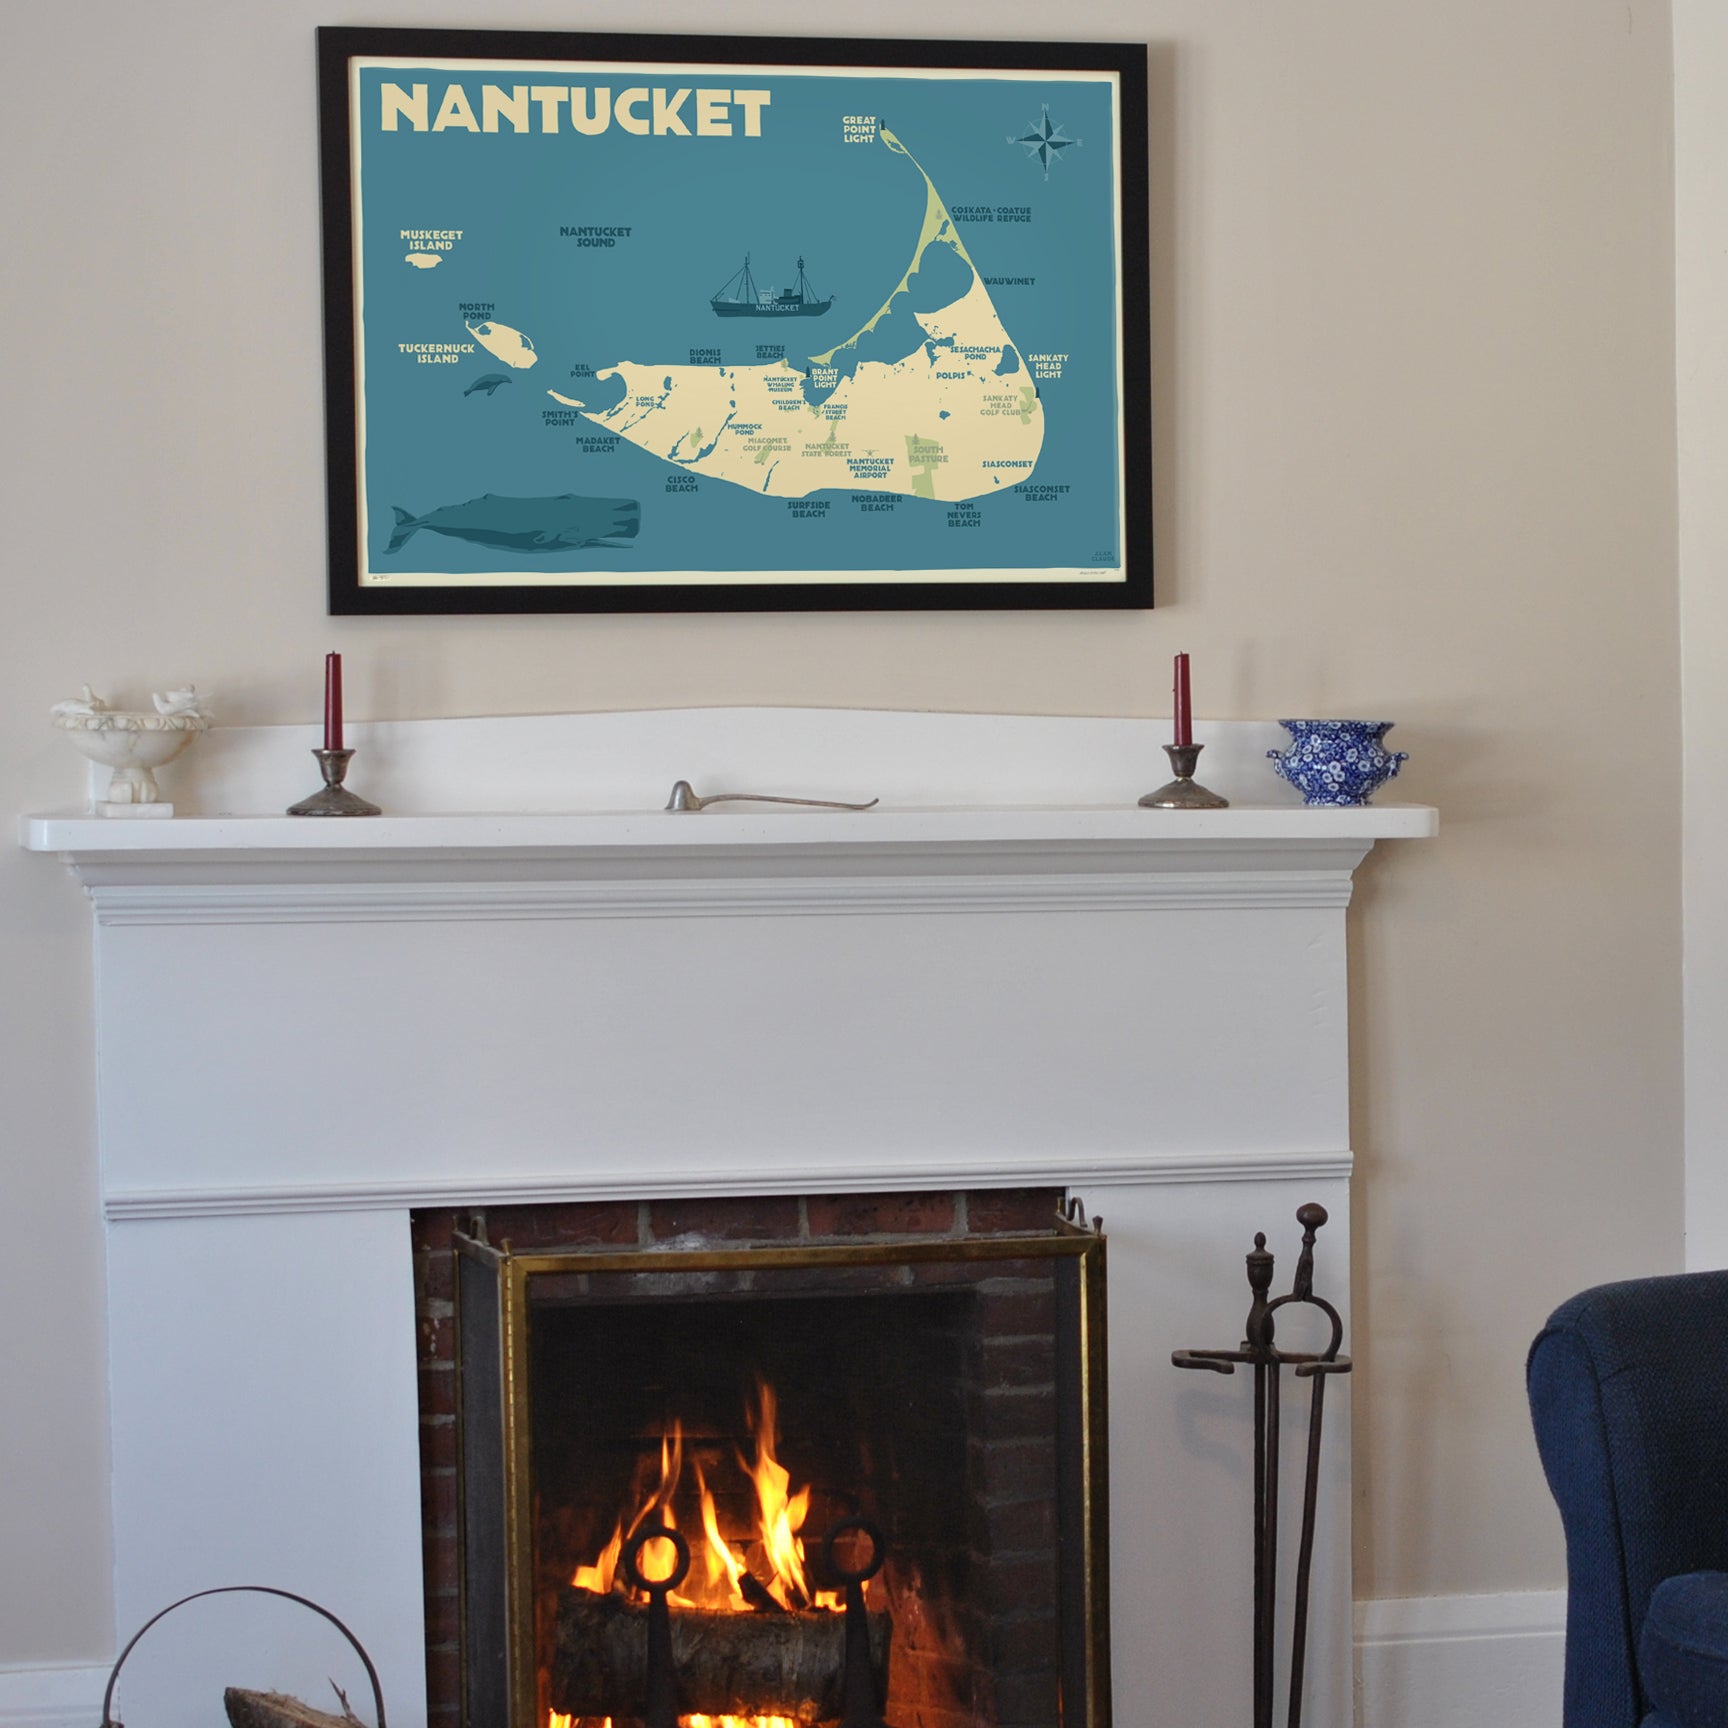 Nantucket Map Art Print 24" x 36" Framed Travel Poster By Alan Claude  - Massachusetts